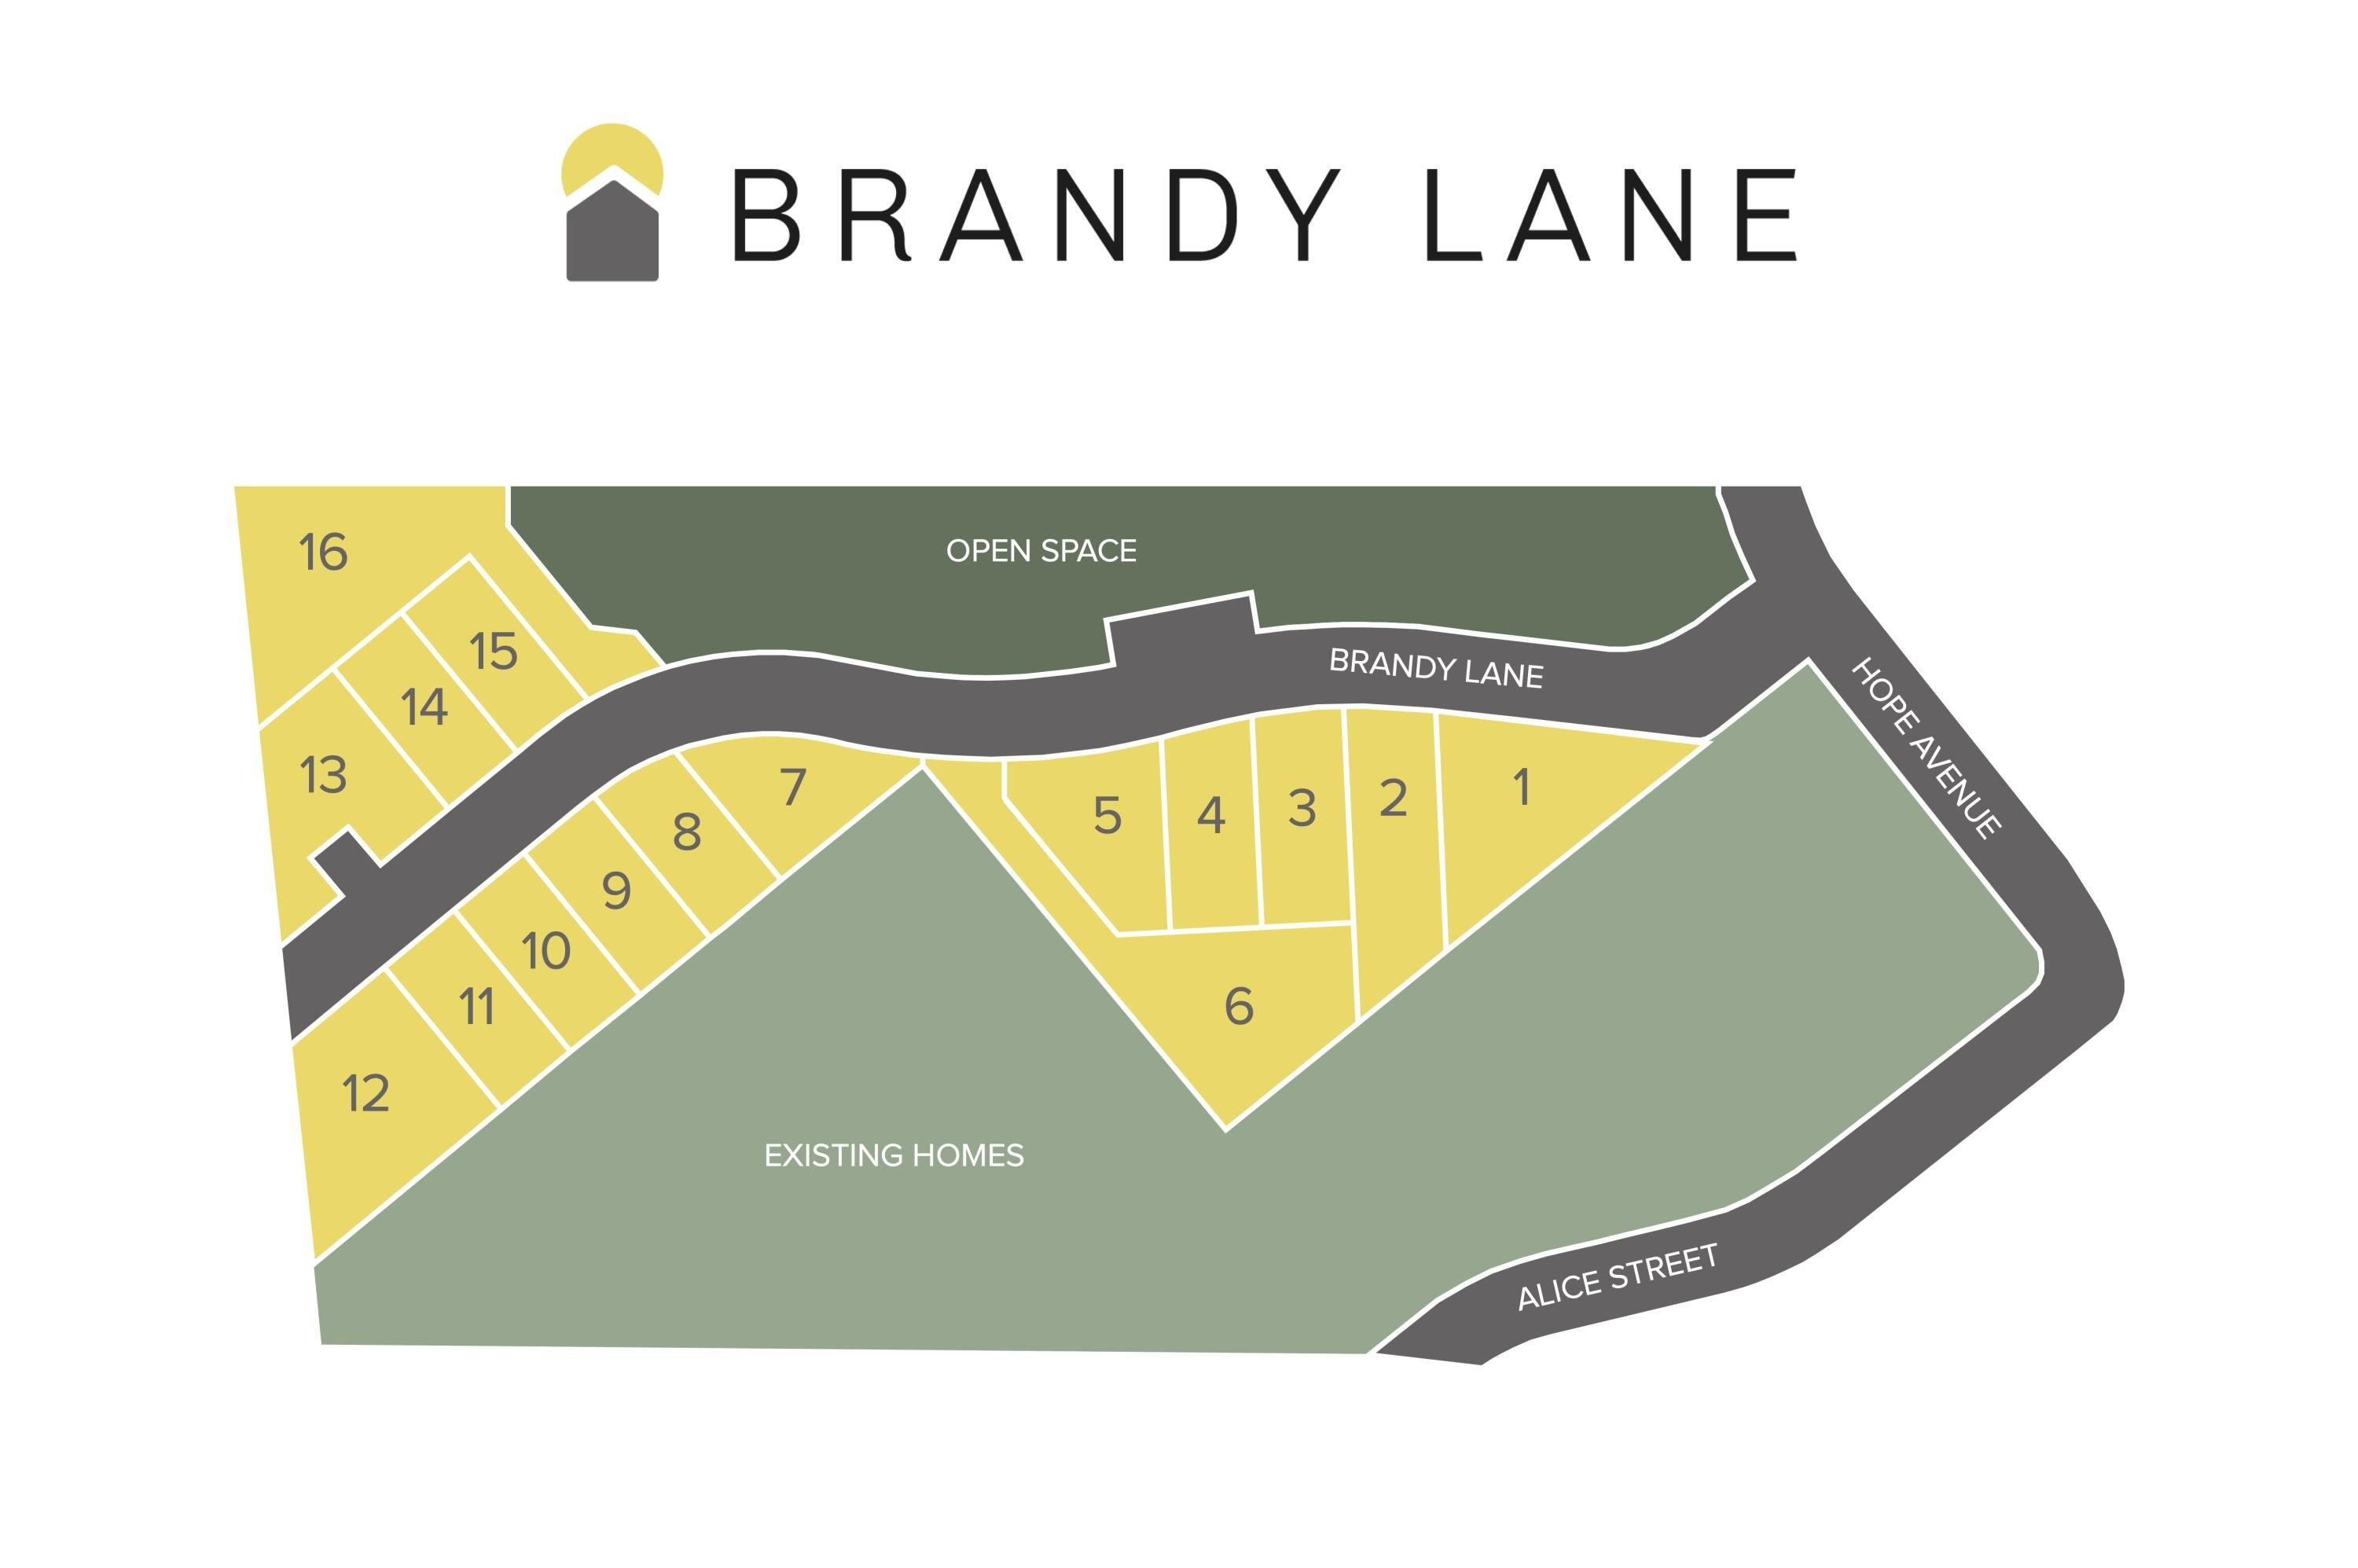 2. 66 Brandy Lane